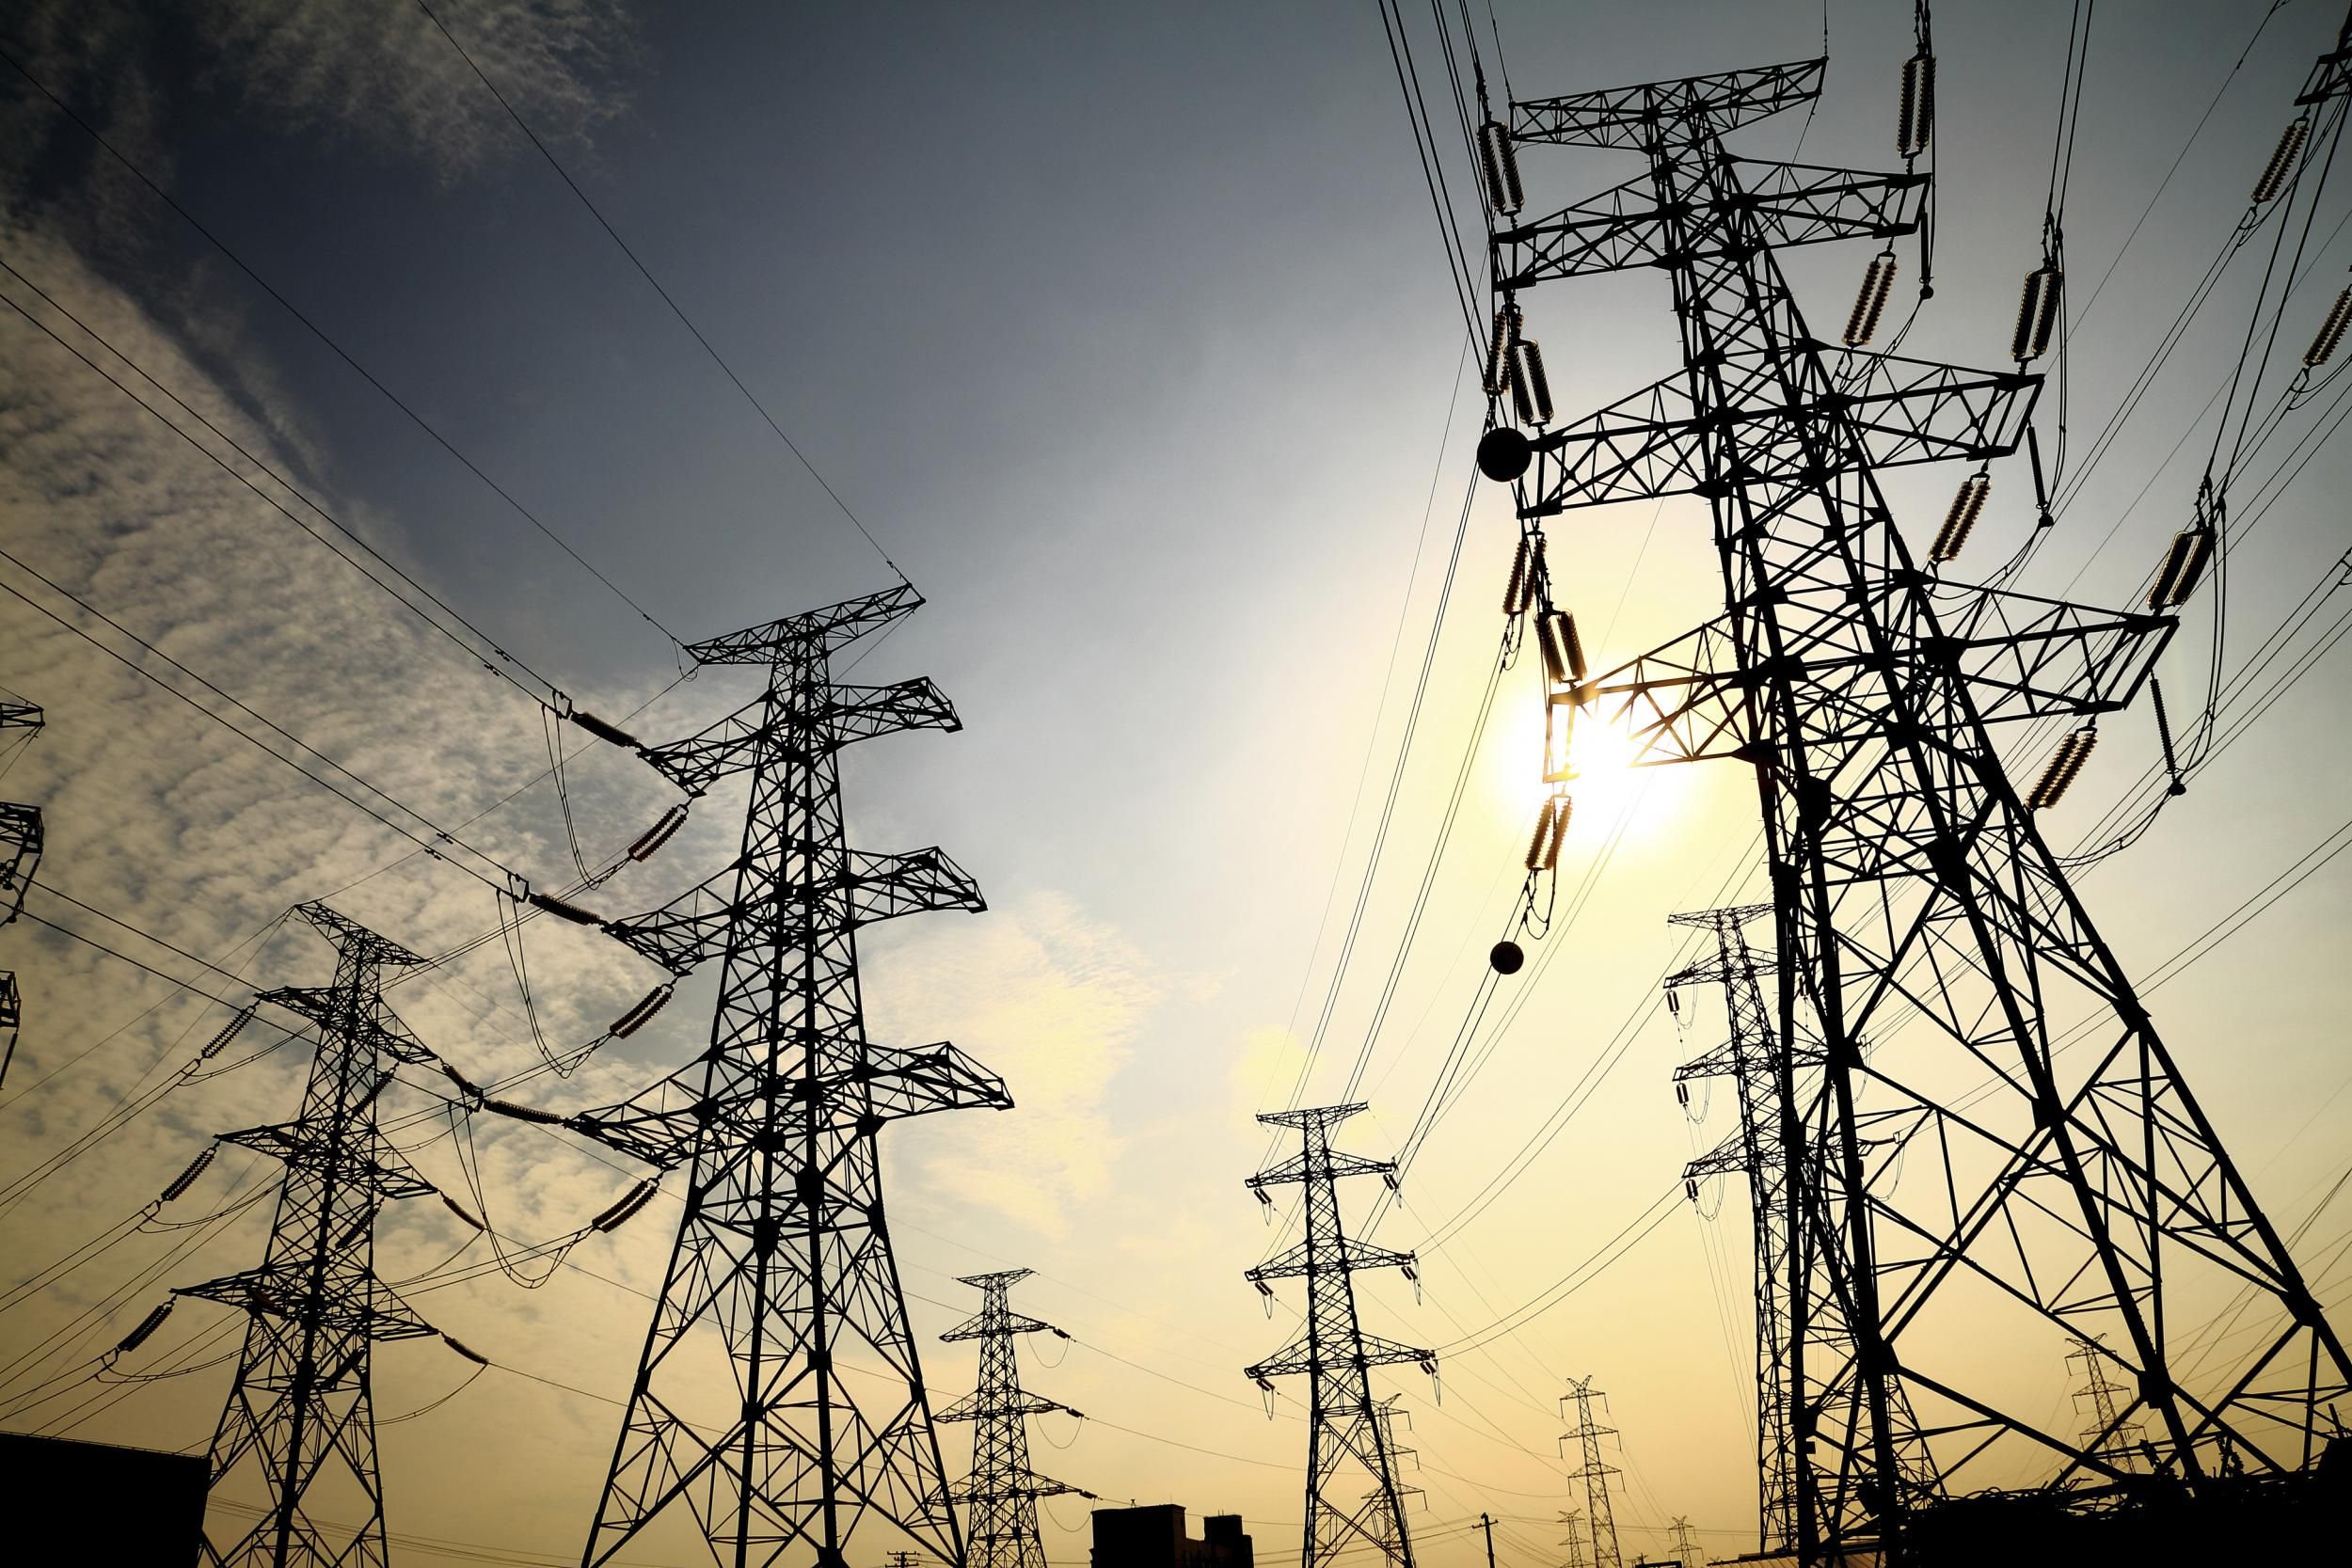 En febrero, el consumo de energía eléctrica en la provincia bajó un 3,4%